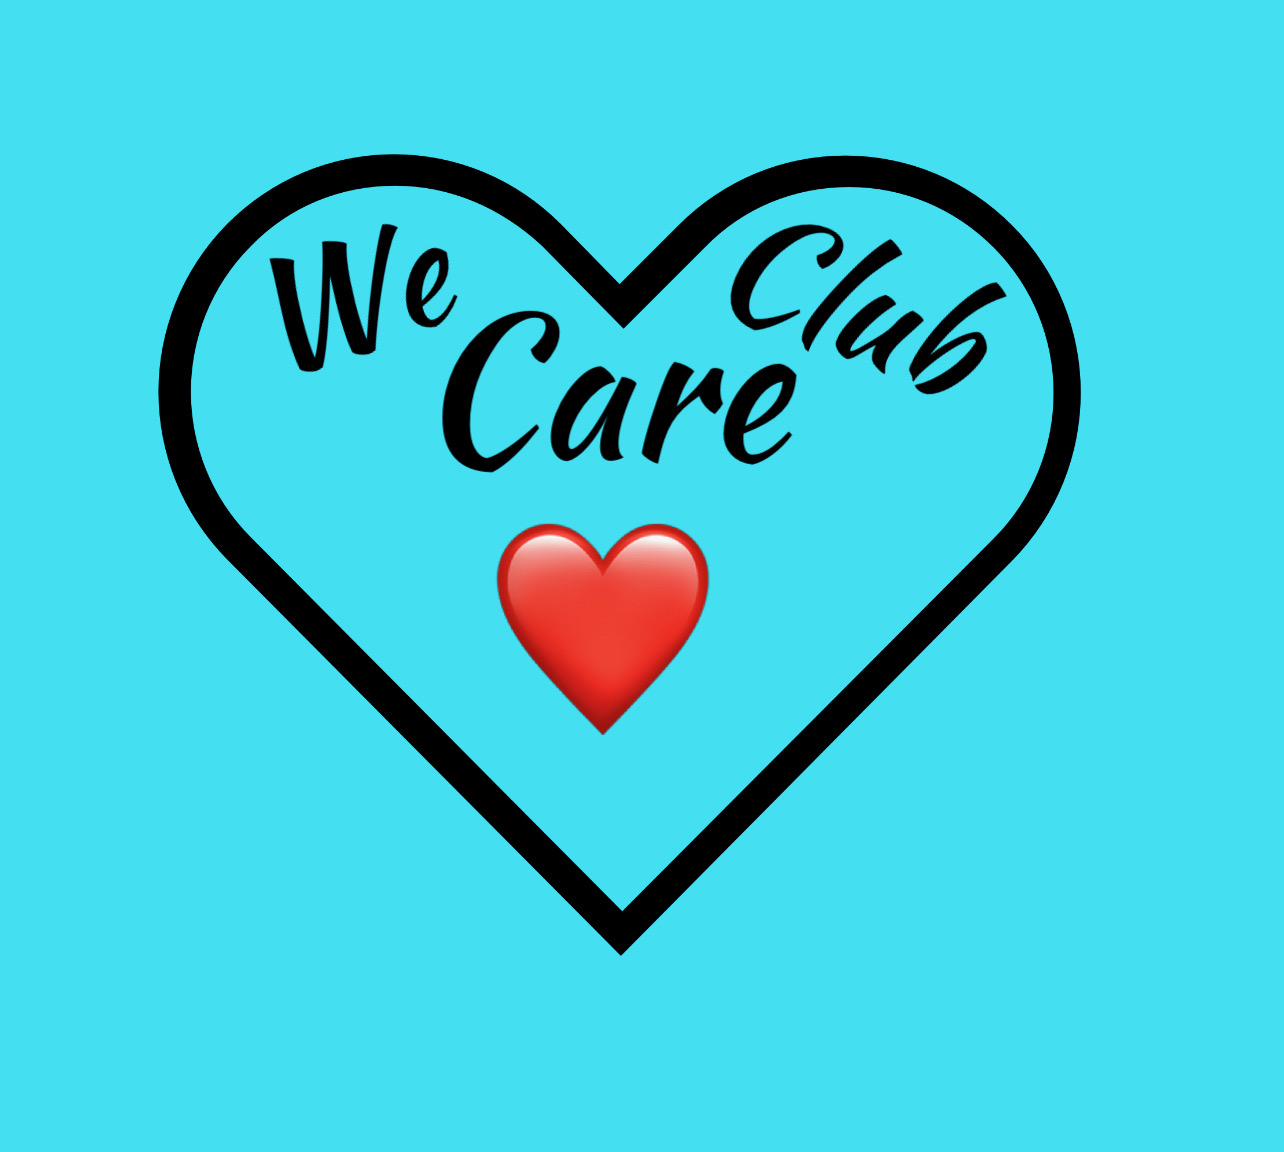 We Care Club